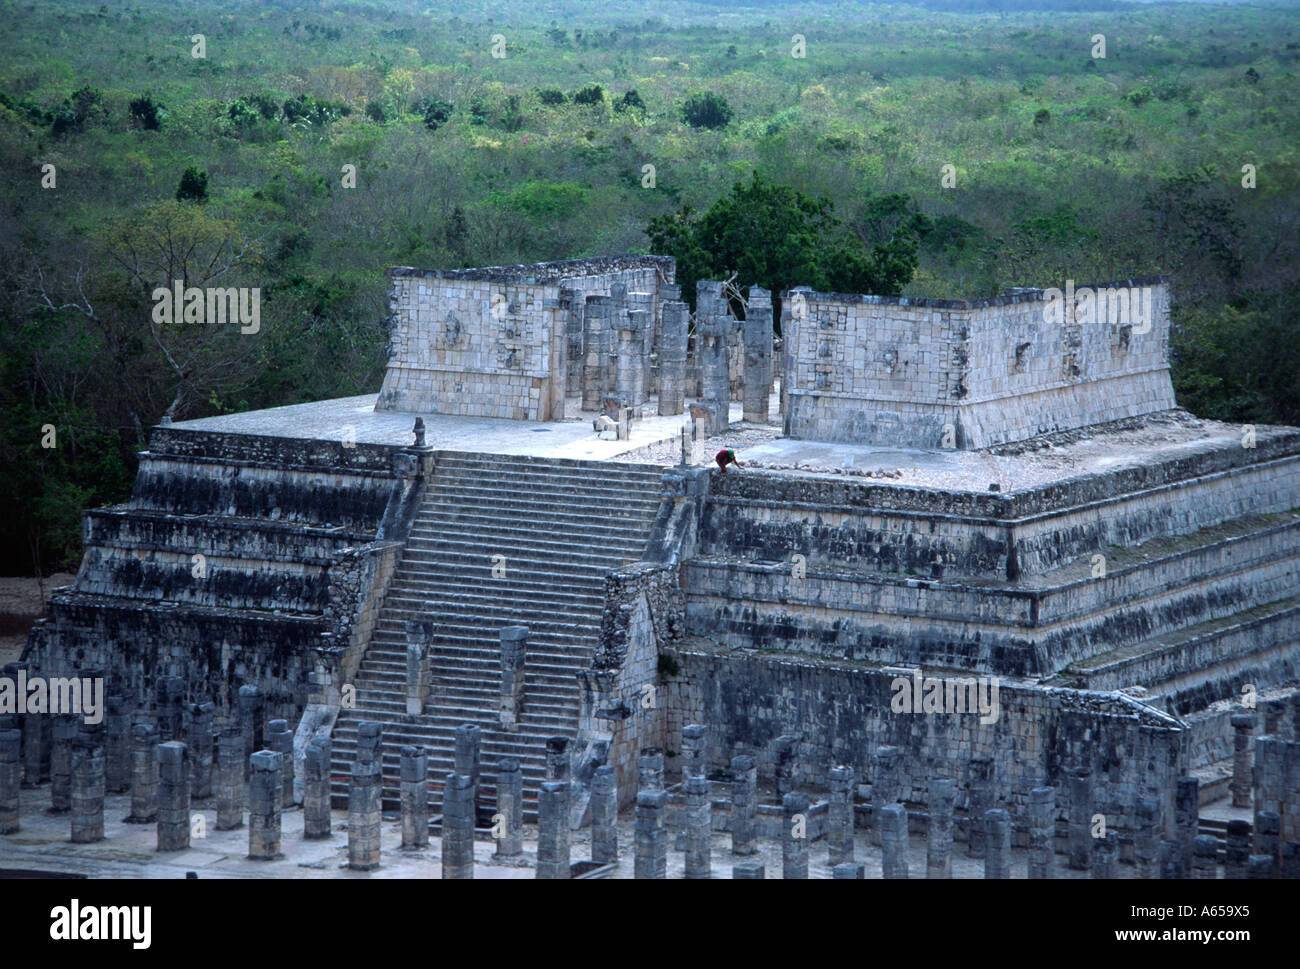 Temple, pyramid, Mayan ruins at Coba, Yucatan Peninsula, Mexico Stock Photo